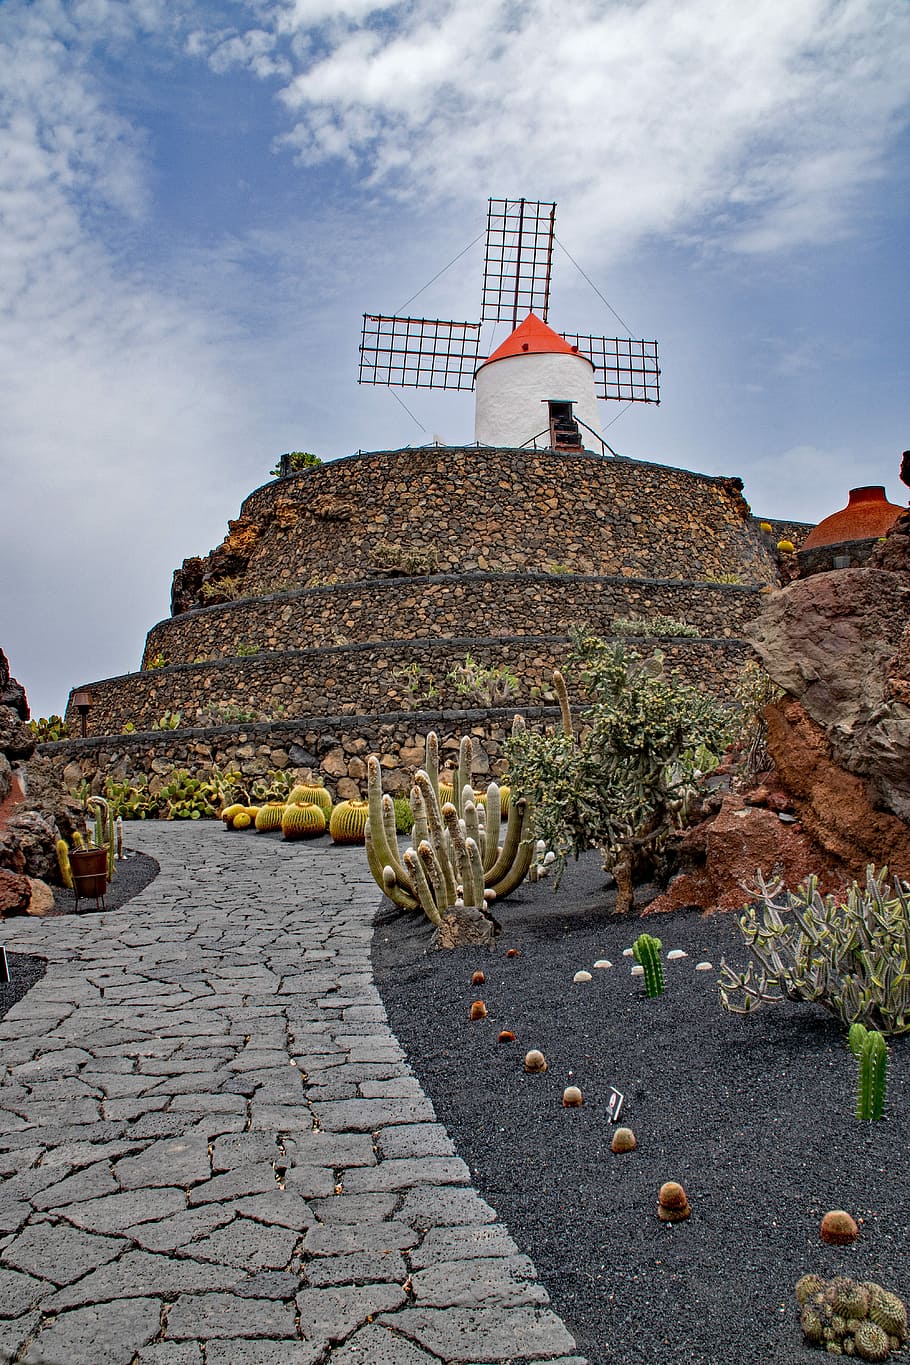 Jardin, De, Cactus, Lanzarote, jardin de cactus, spain, africa attractions, guatiza, windmill, lava